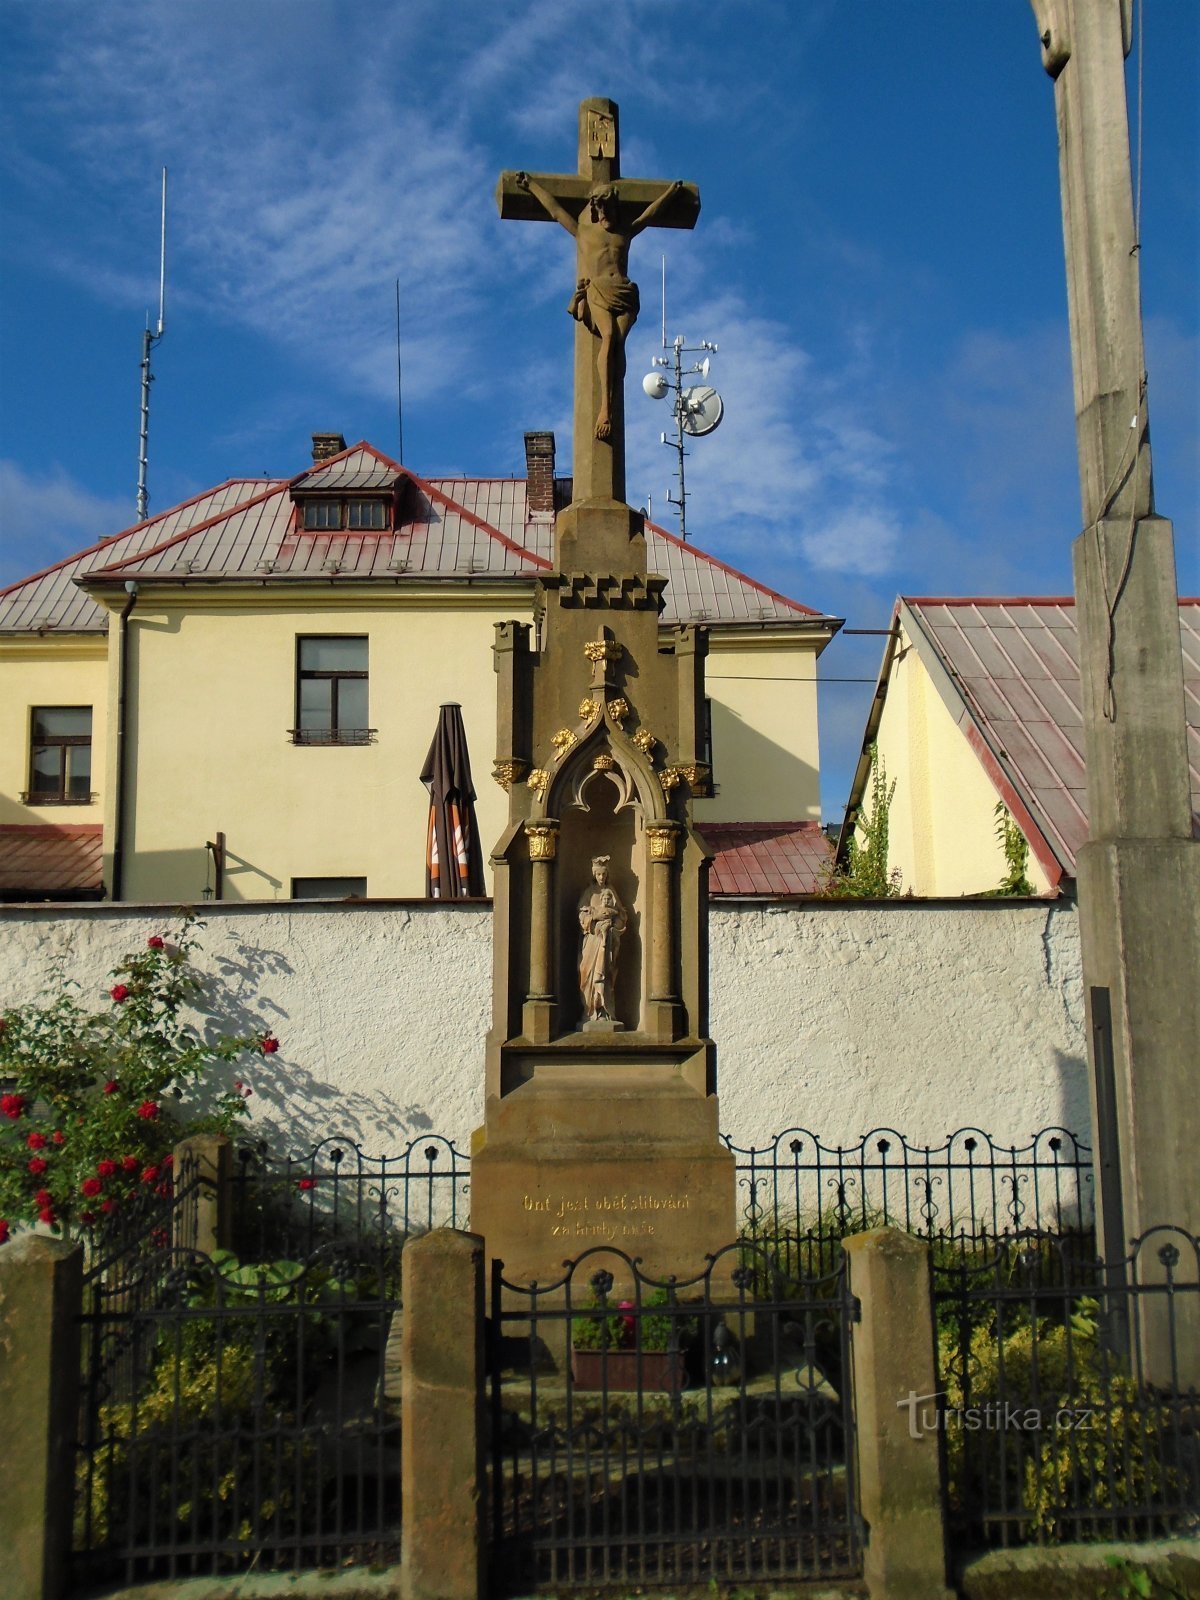 Cruce în Svinary (Hradec Králové, 2.9.2020 septembrie XNUMX)